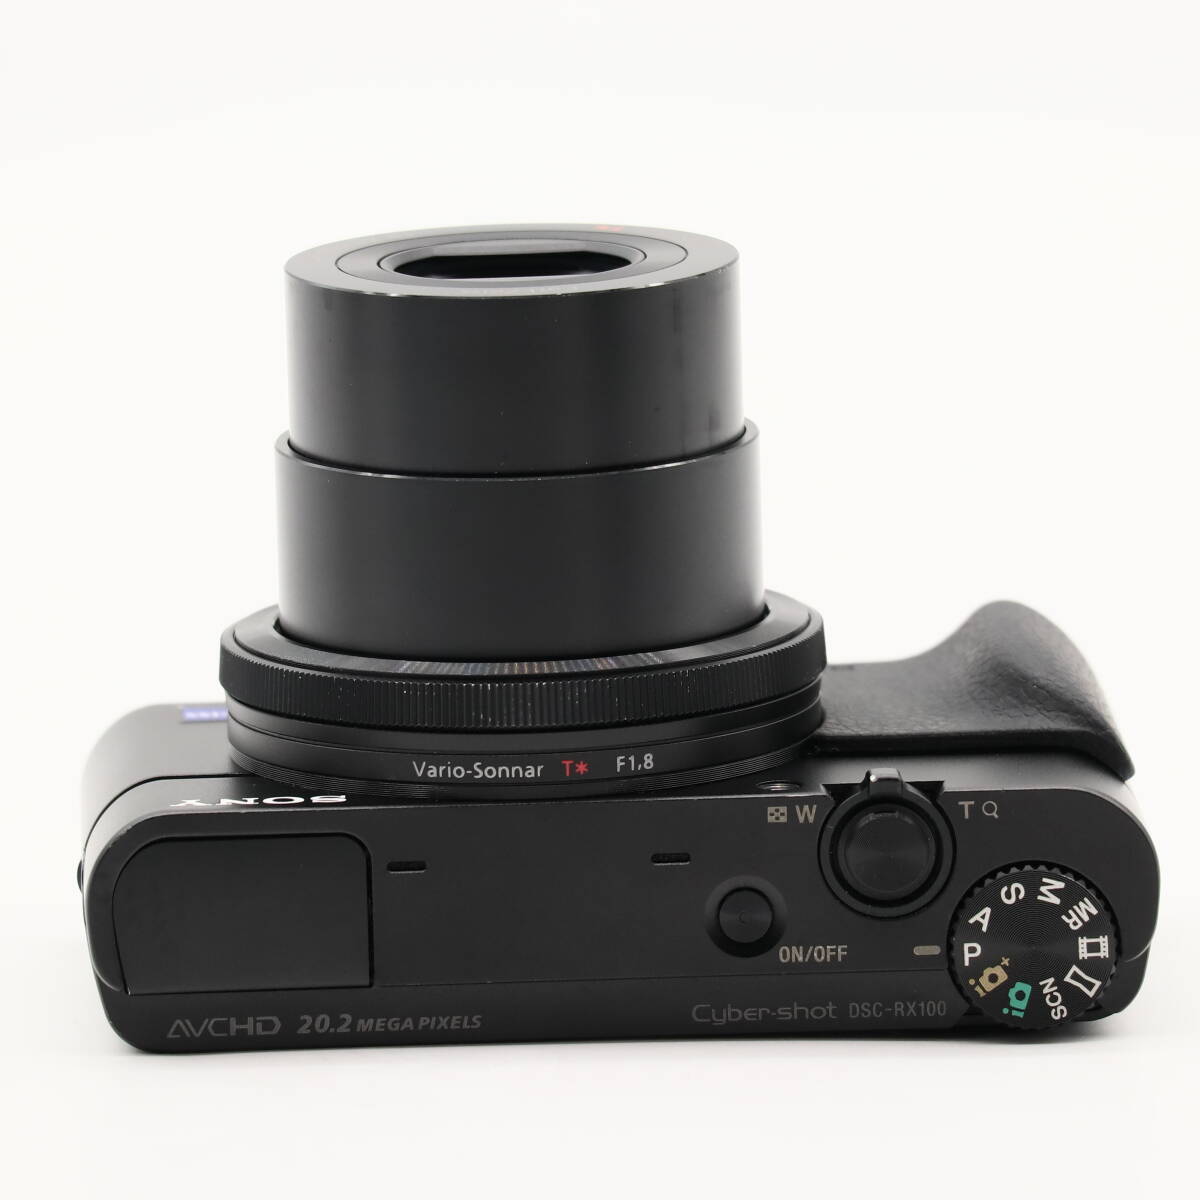 極上品 | SONY ソニー デジタルカメラ DSC-RX100 1.0型センサー F1.8レンズ搭載 ブラック Cyber-shot DSC-RX100 #3546_画像4